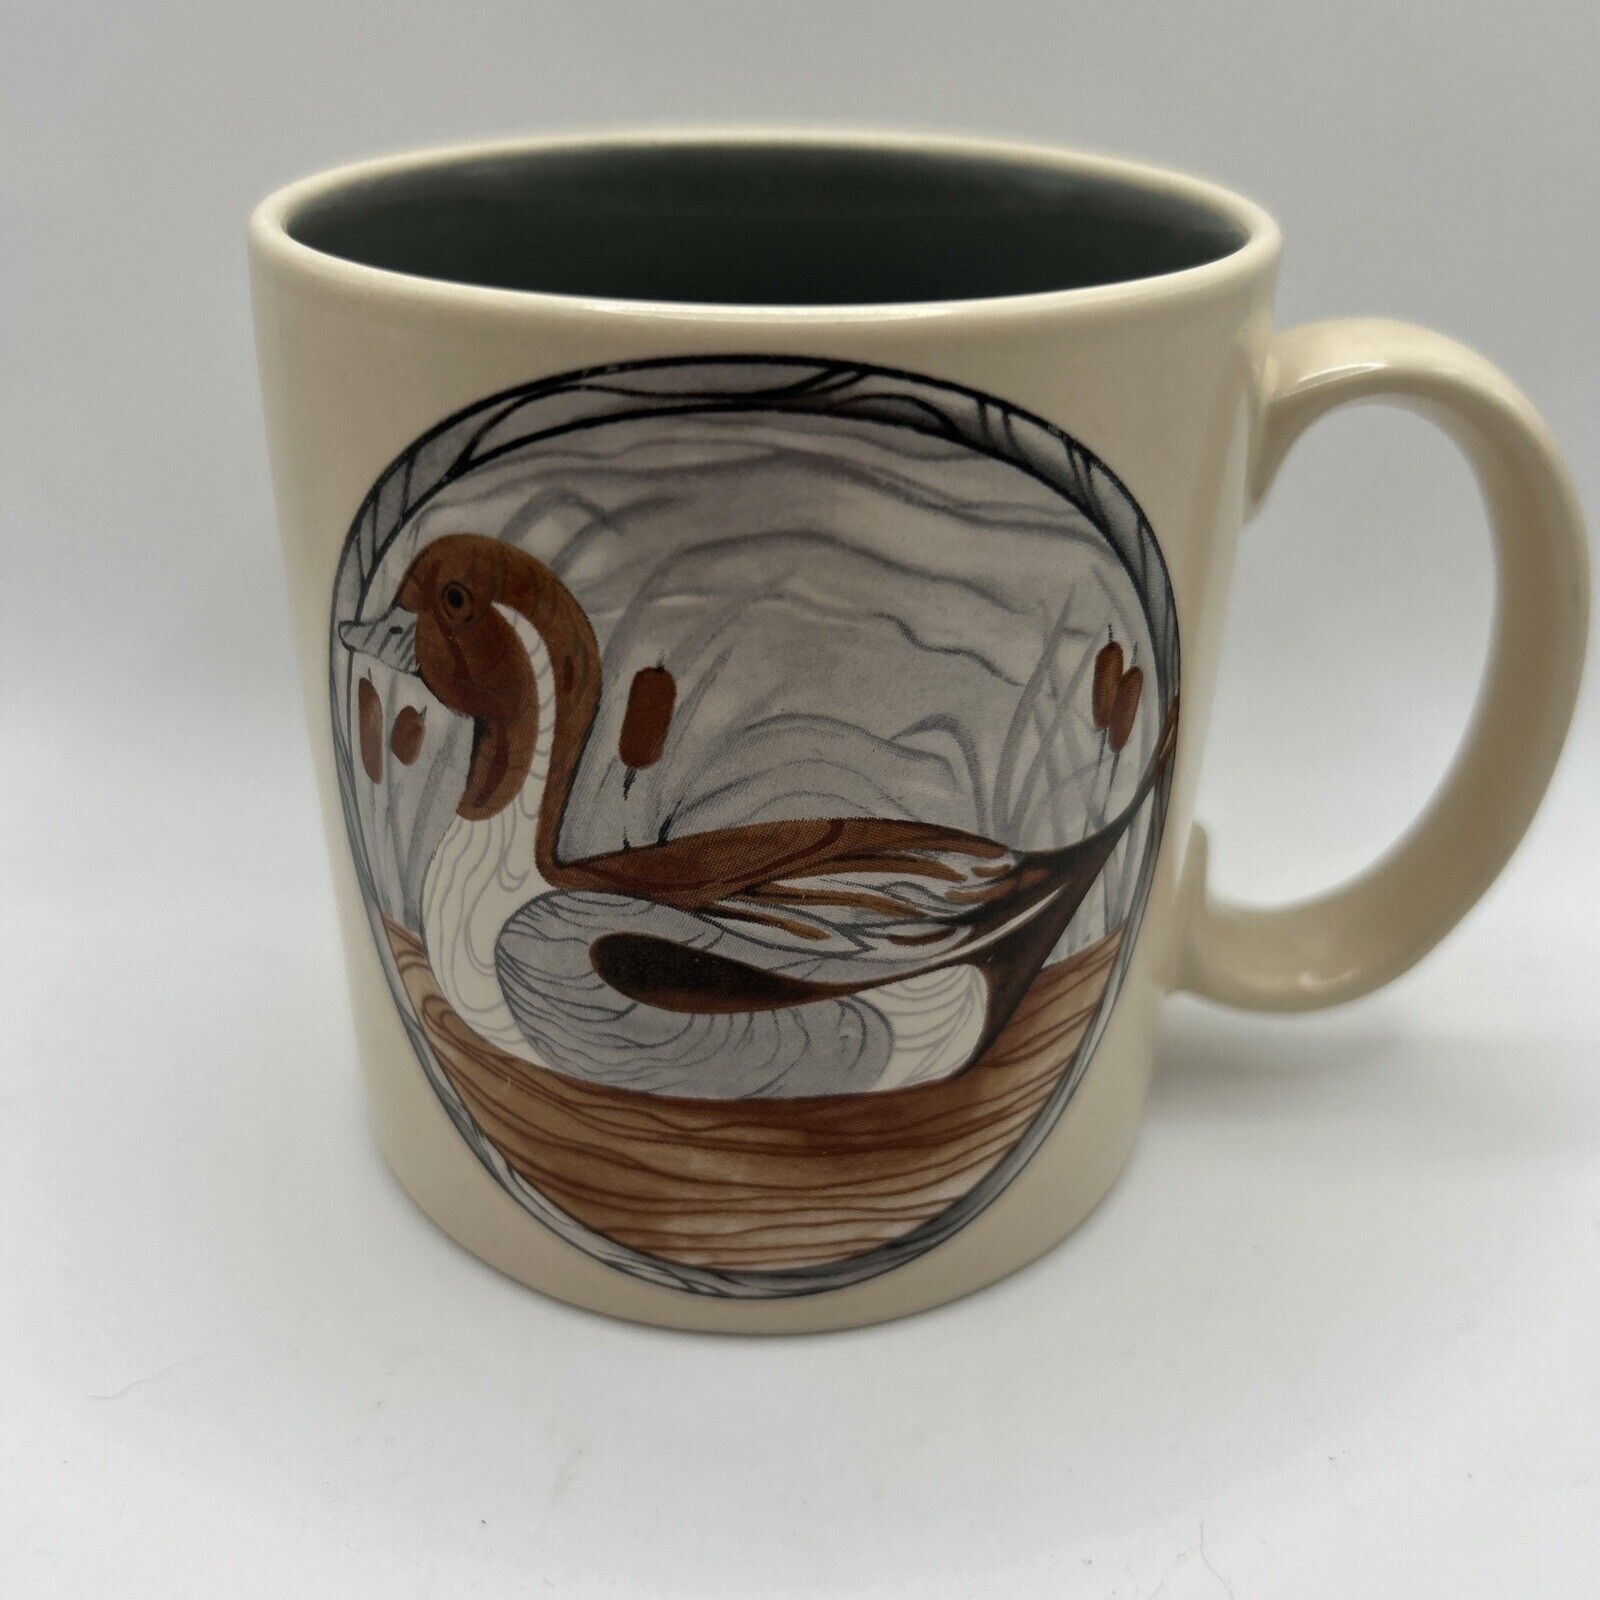 Applause Vintage Mallard Duck Coffee Tea Mug Cup Ceramic 1985 Korea #5735